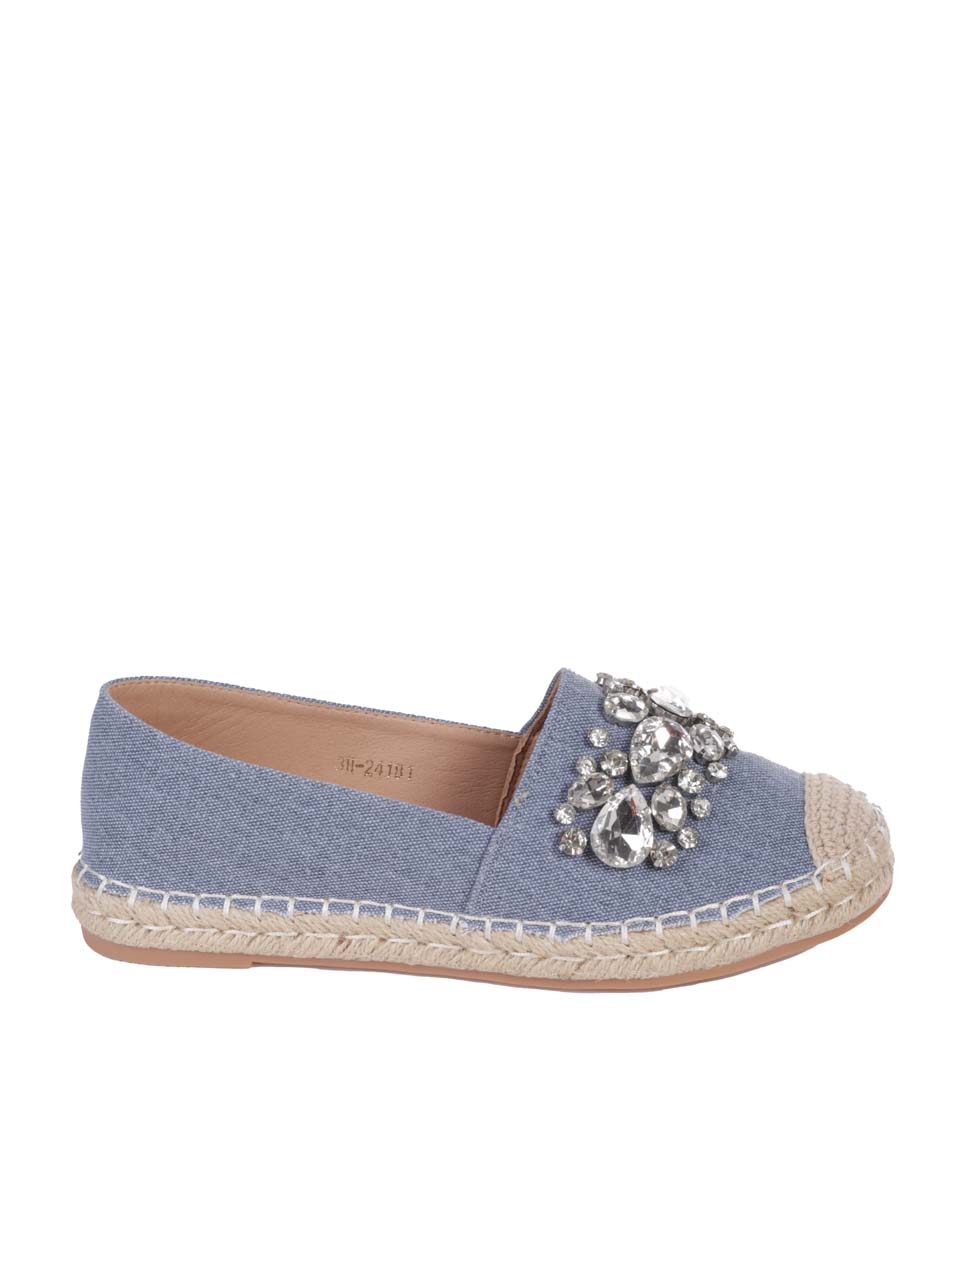 Ежедневни дамски обувки с декоратични камъни в синьо 3H-24181 lt.blue